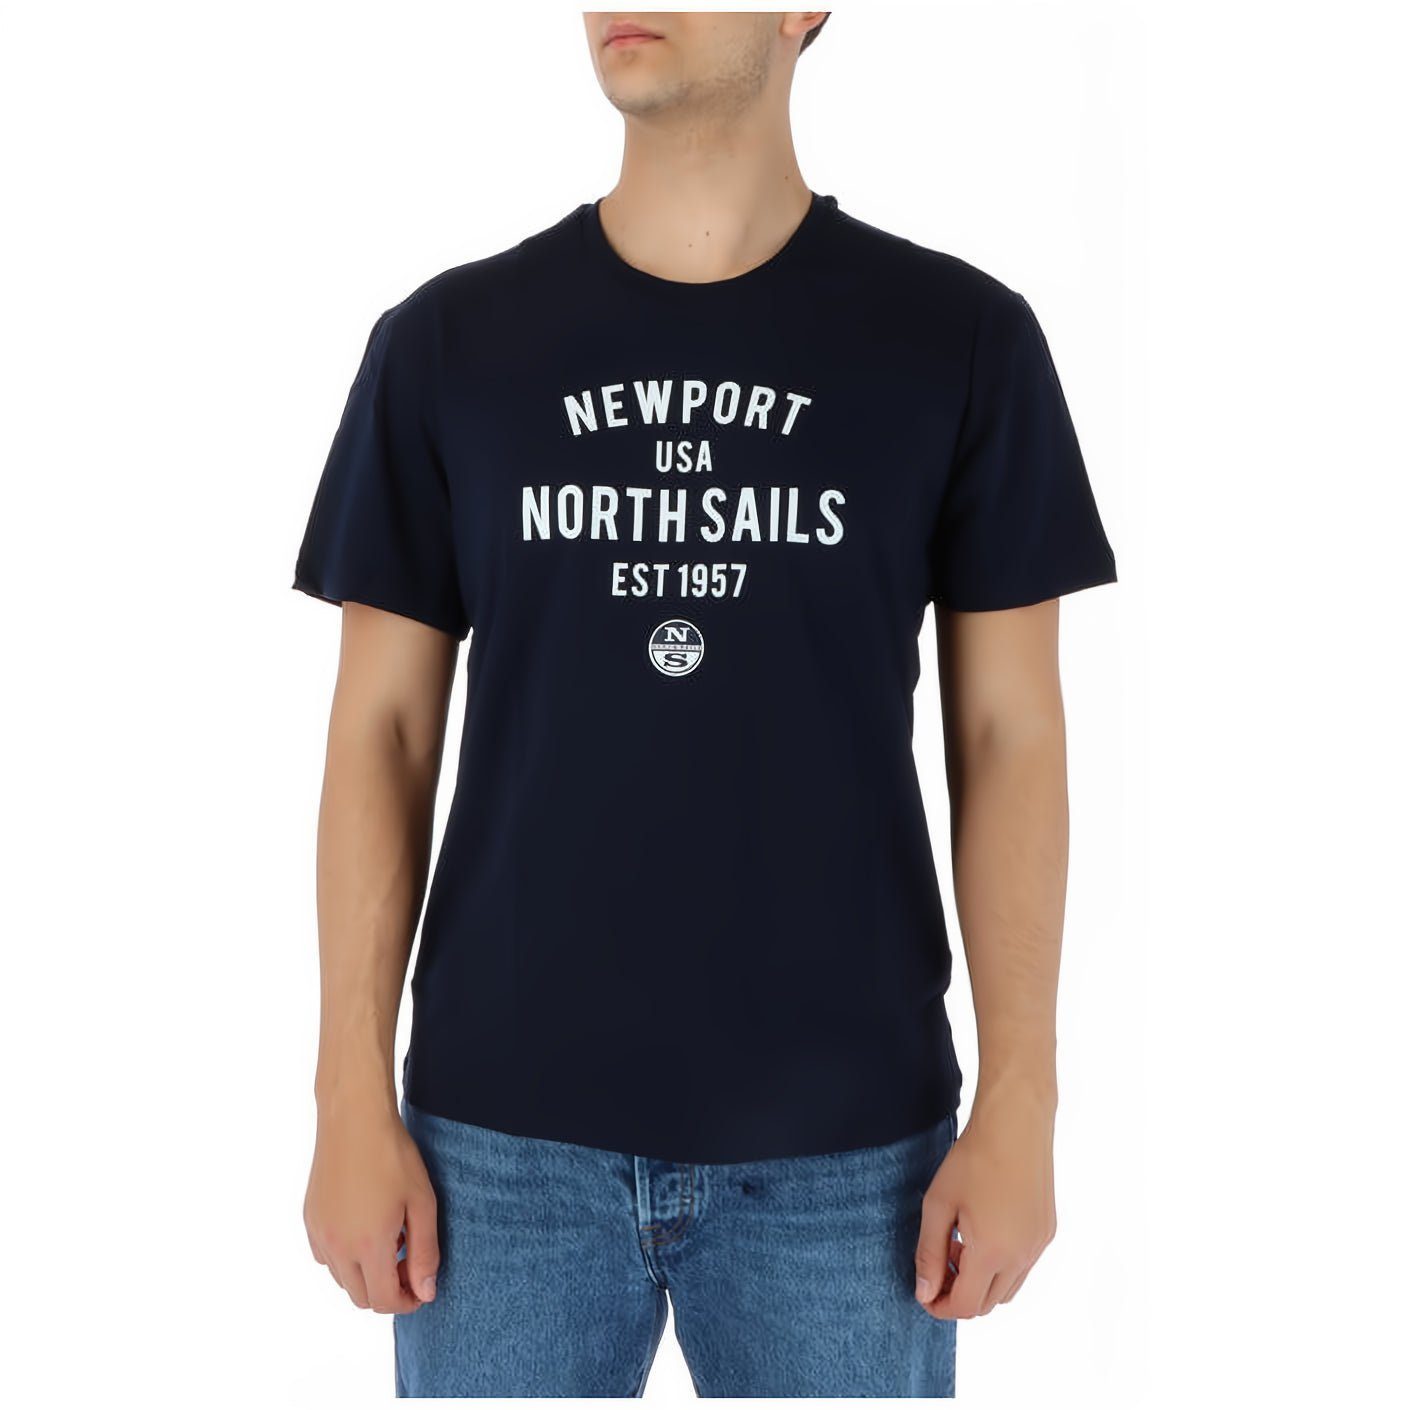 North das T-Shirt modische Sails, Sails modische T-Shirt Herren Entdecke für North T-Shirt Herren!